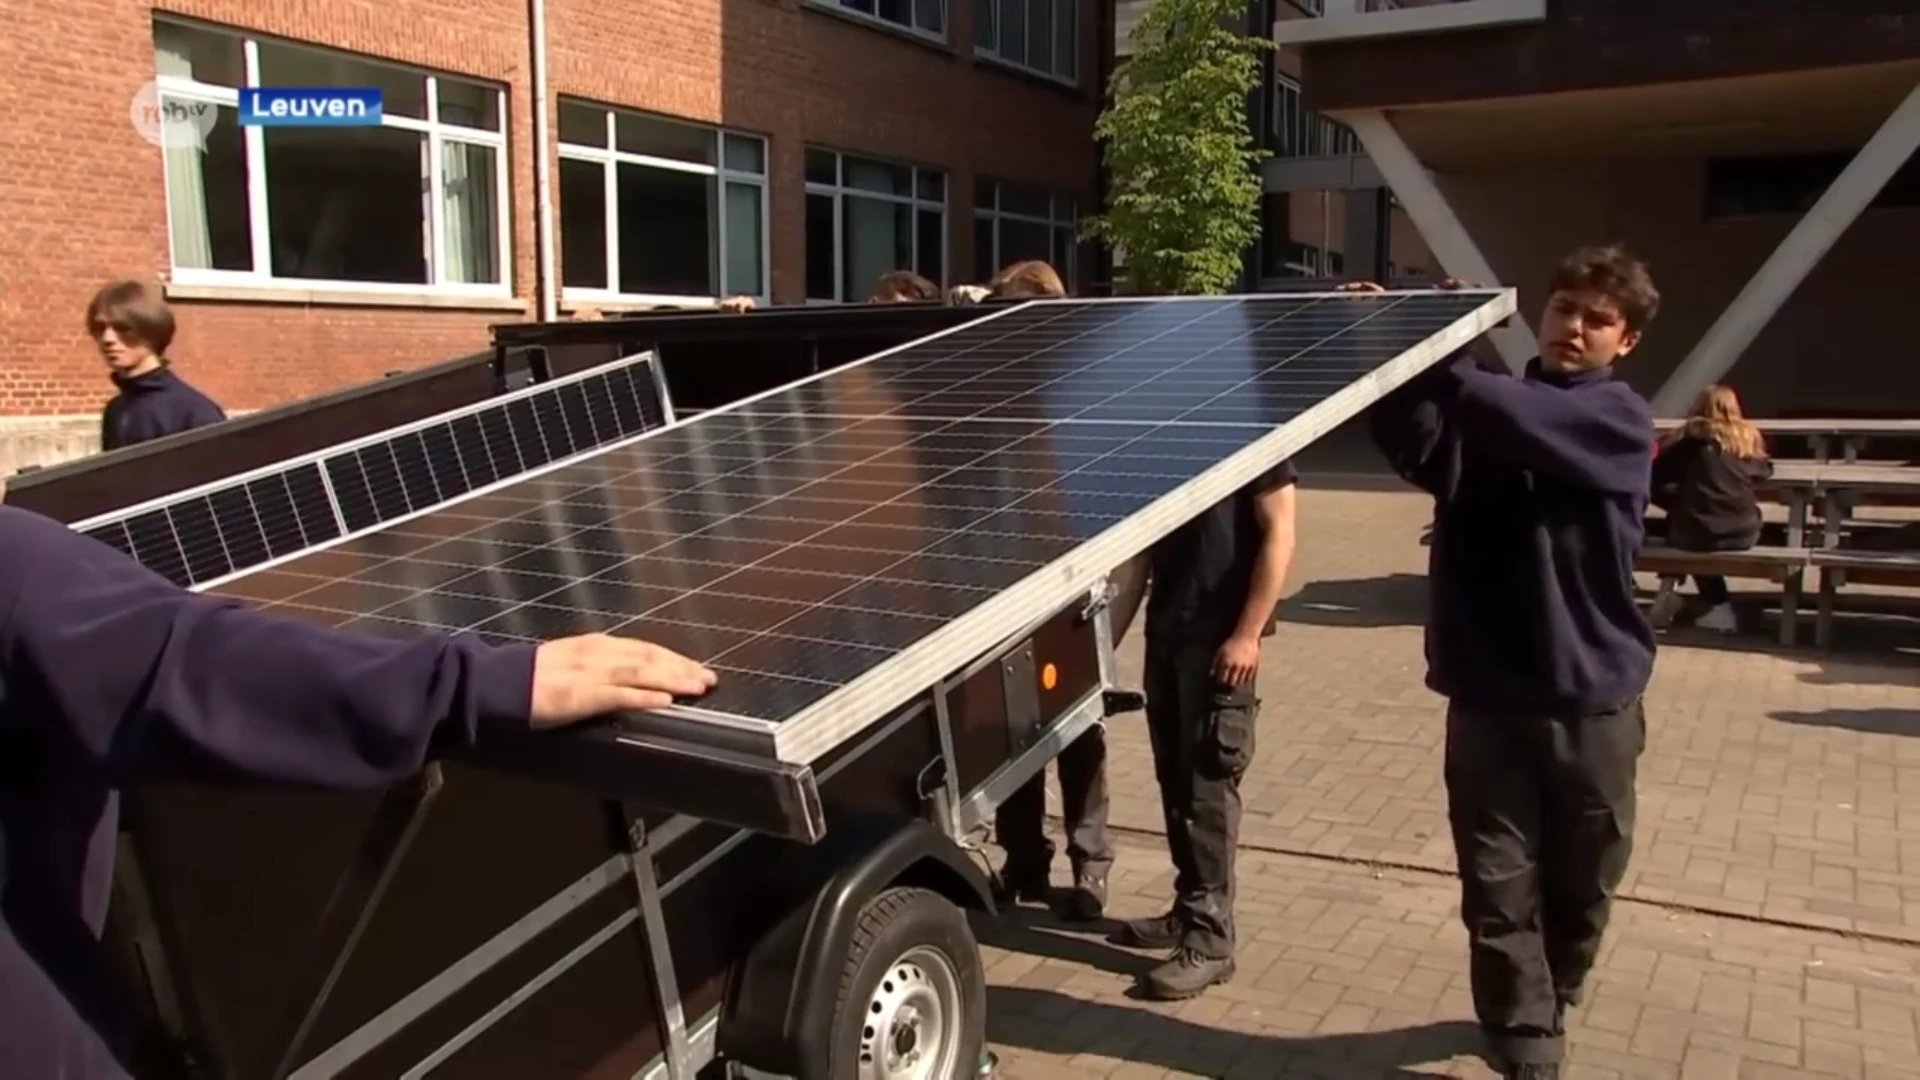 Laatstejaarsstudenten VTI Leuven ontwerpen batterij op zonne-energie 'SolarKar'